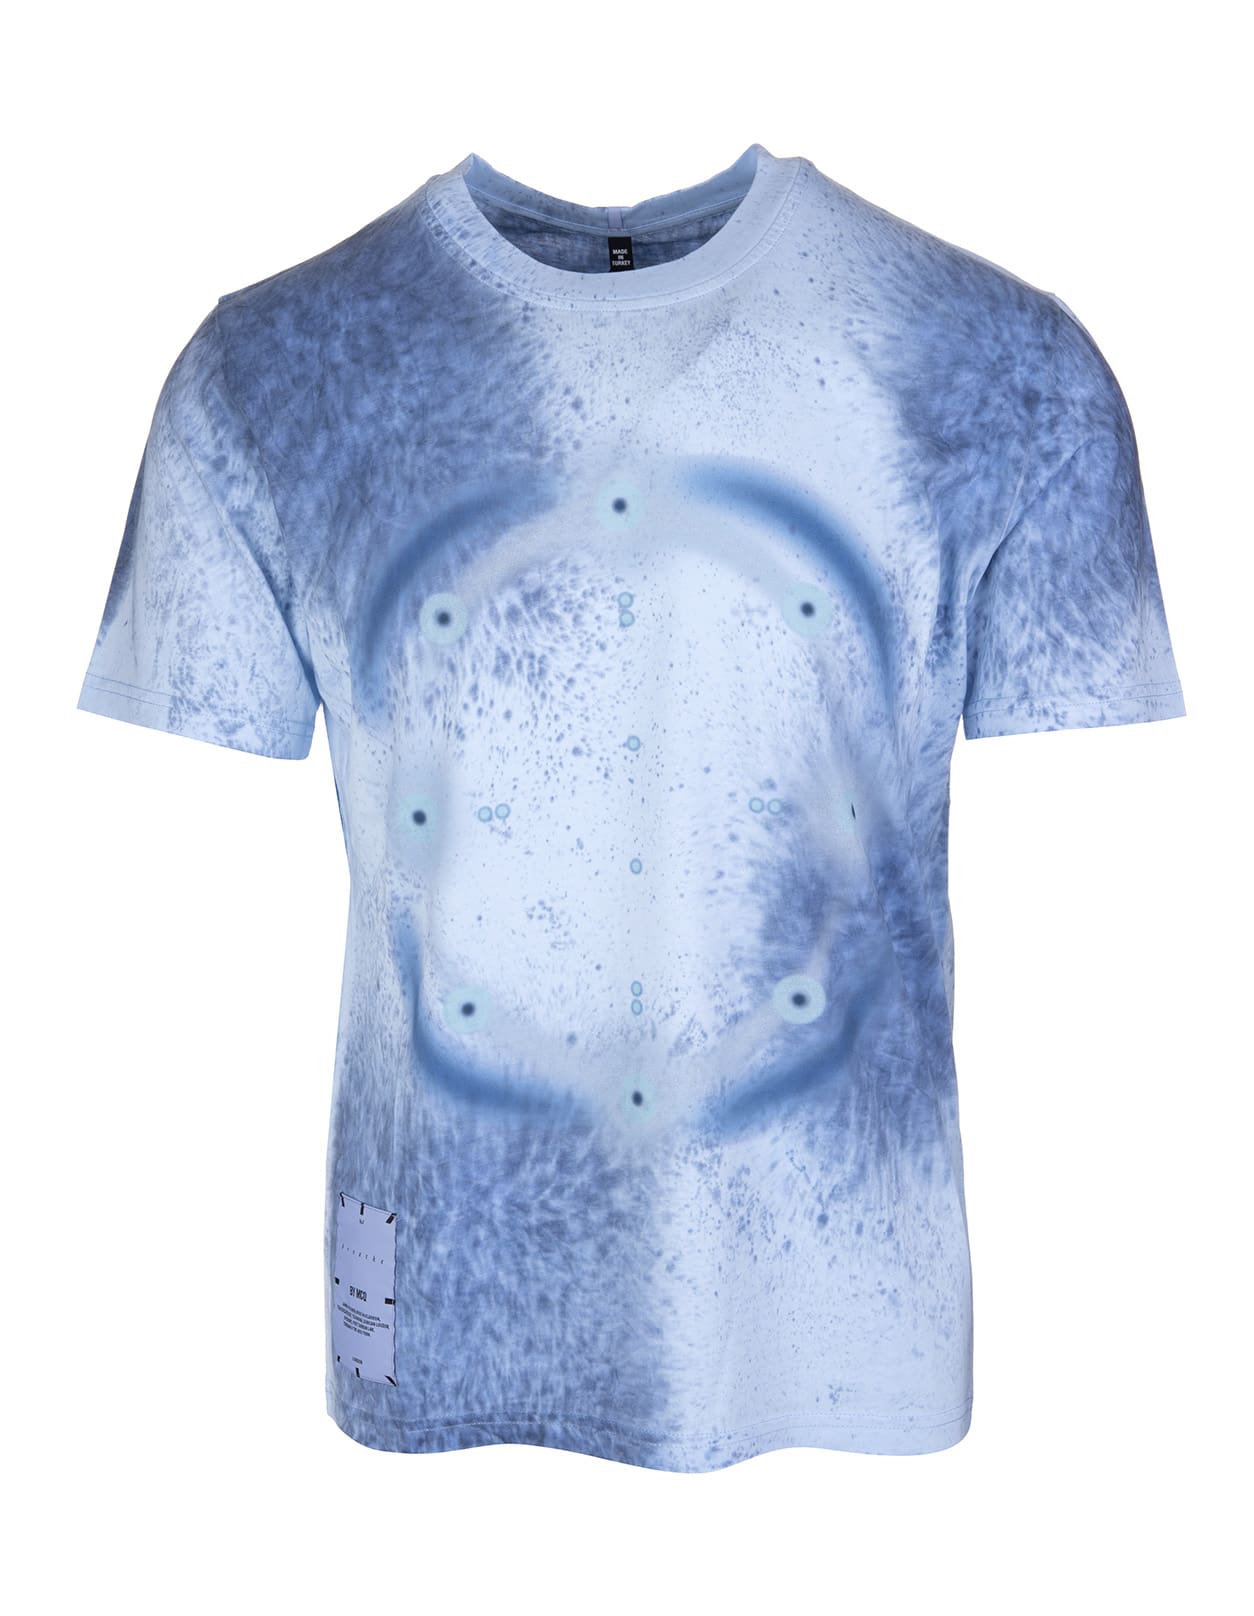 McQ Alexander McQueen Man Light Blue T-shirt With Blue Tie-dye Print